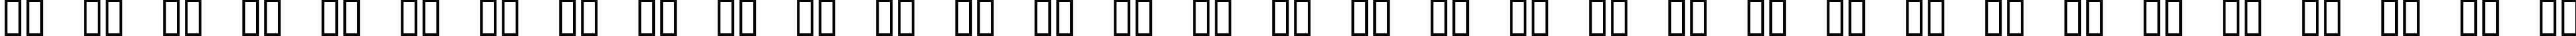 Пример написания русского алфавита шрифтом Excelerate